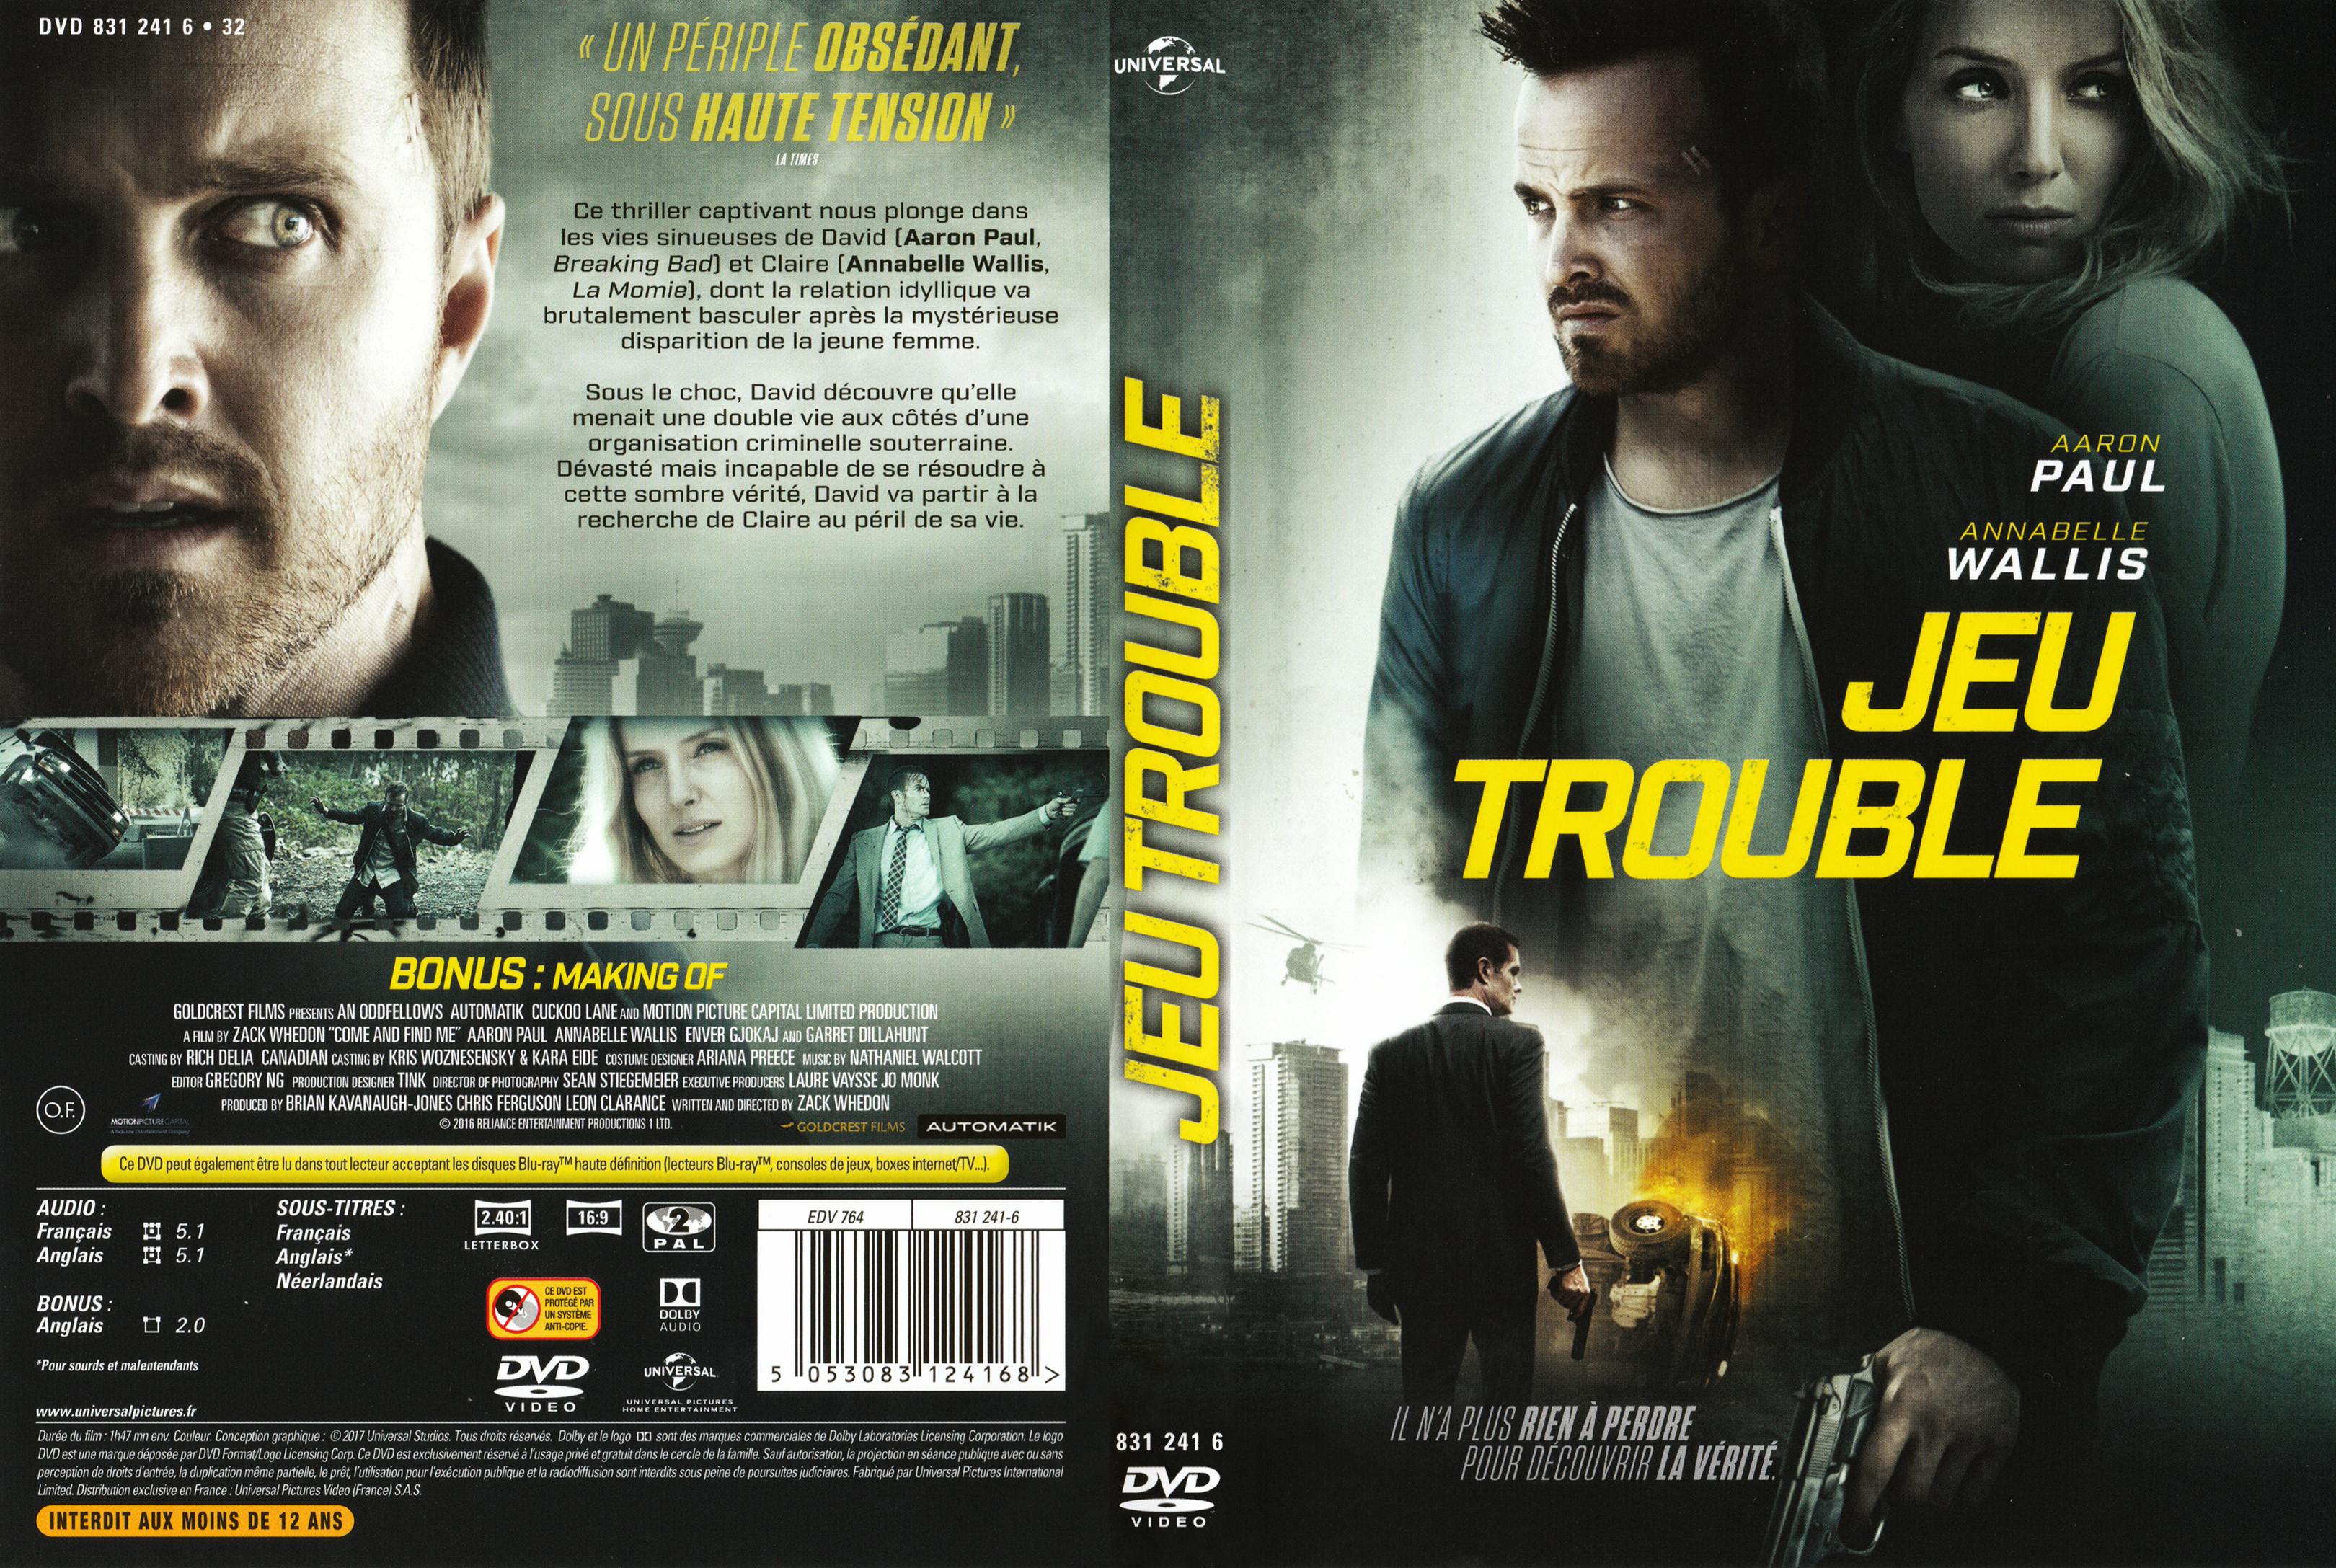 Jaquette DVD Jeu trouble